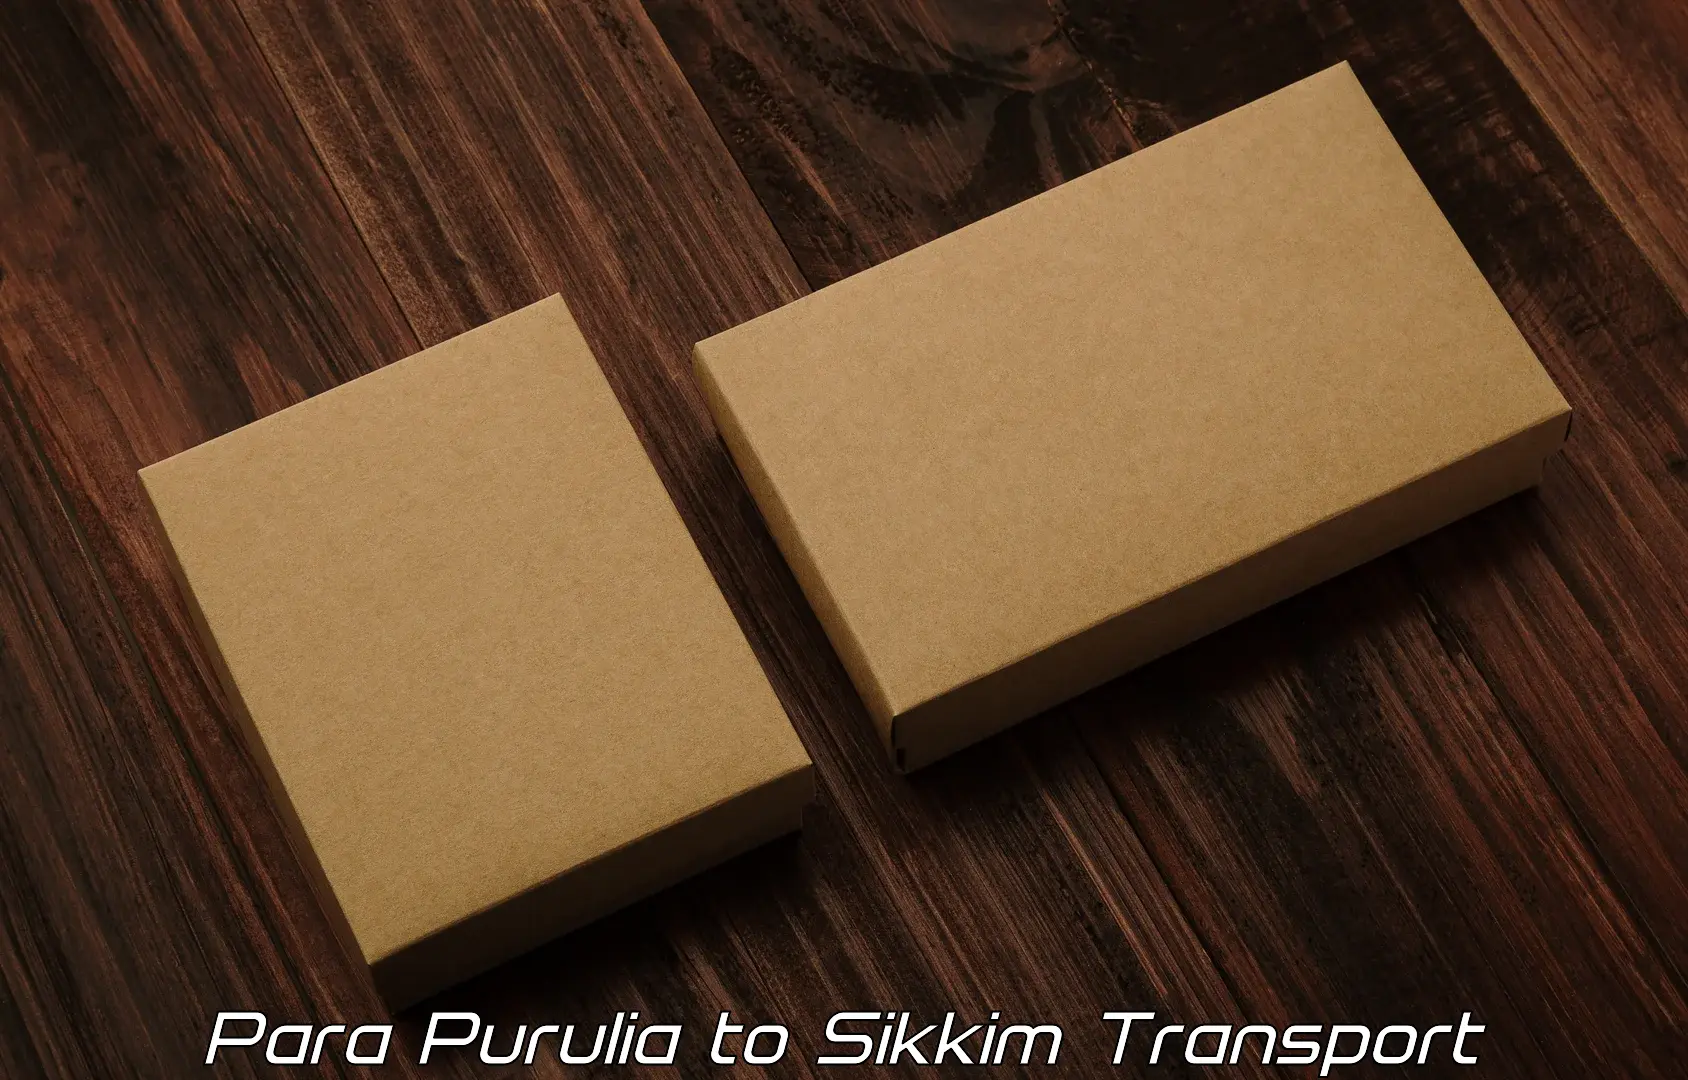 Bike shipping service Para Purulia to North Sikkim